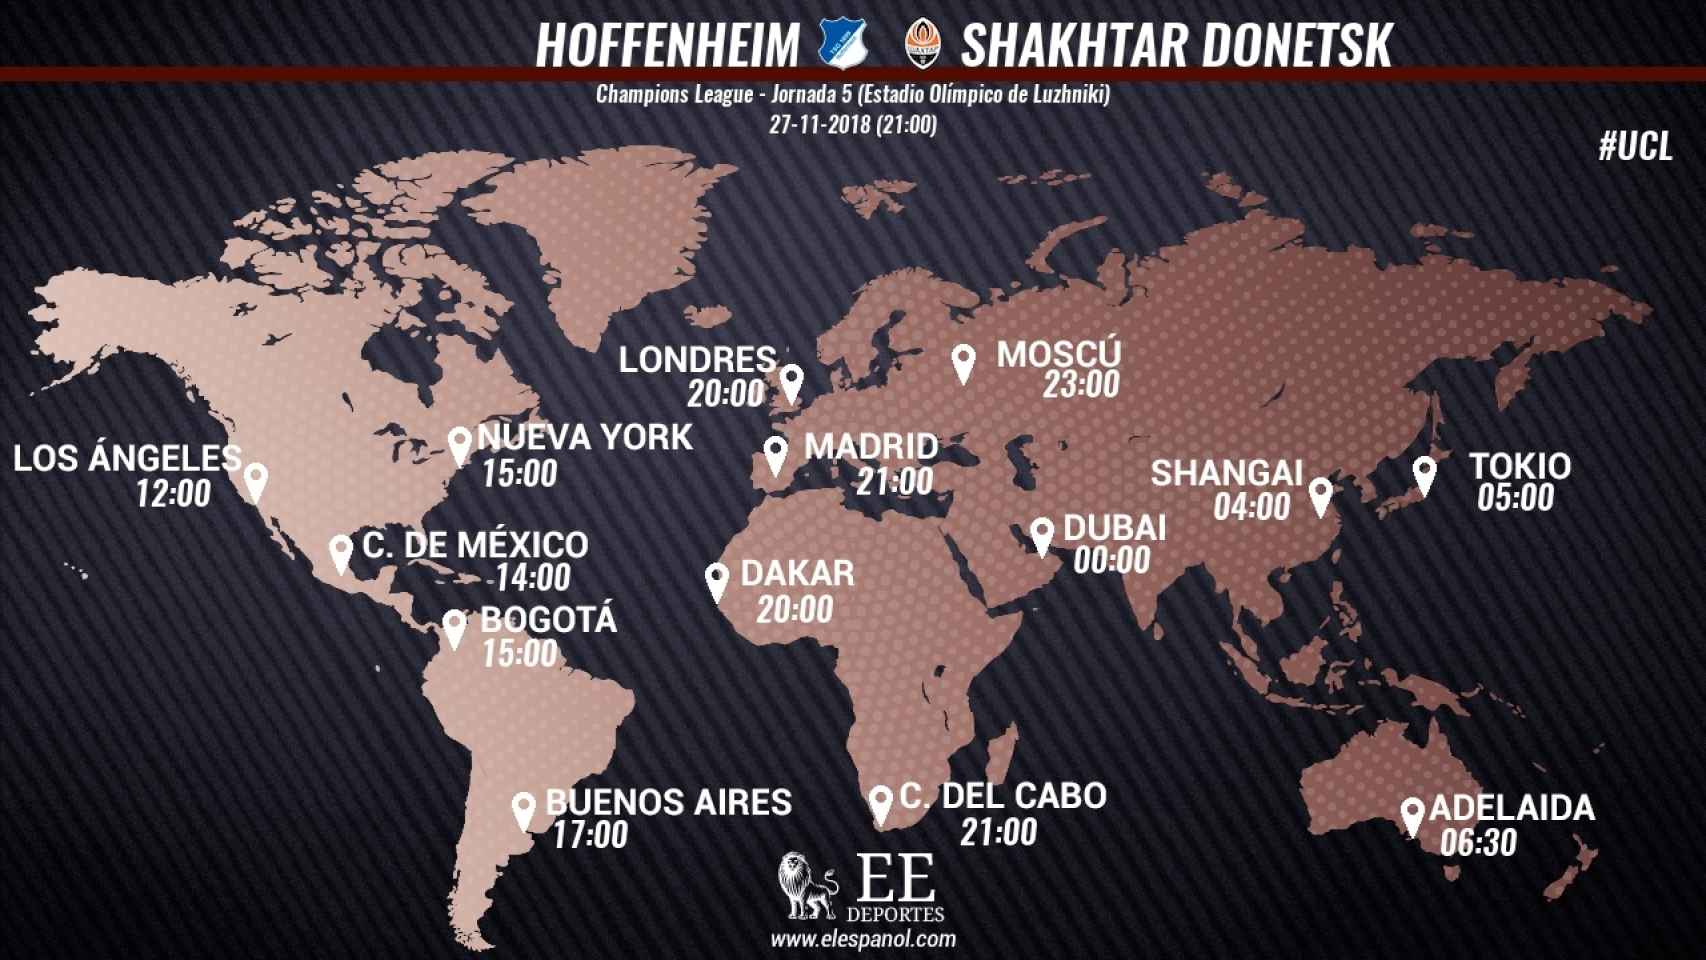 Horario internacional y dónde ver Hoffenheim - Shakhtar